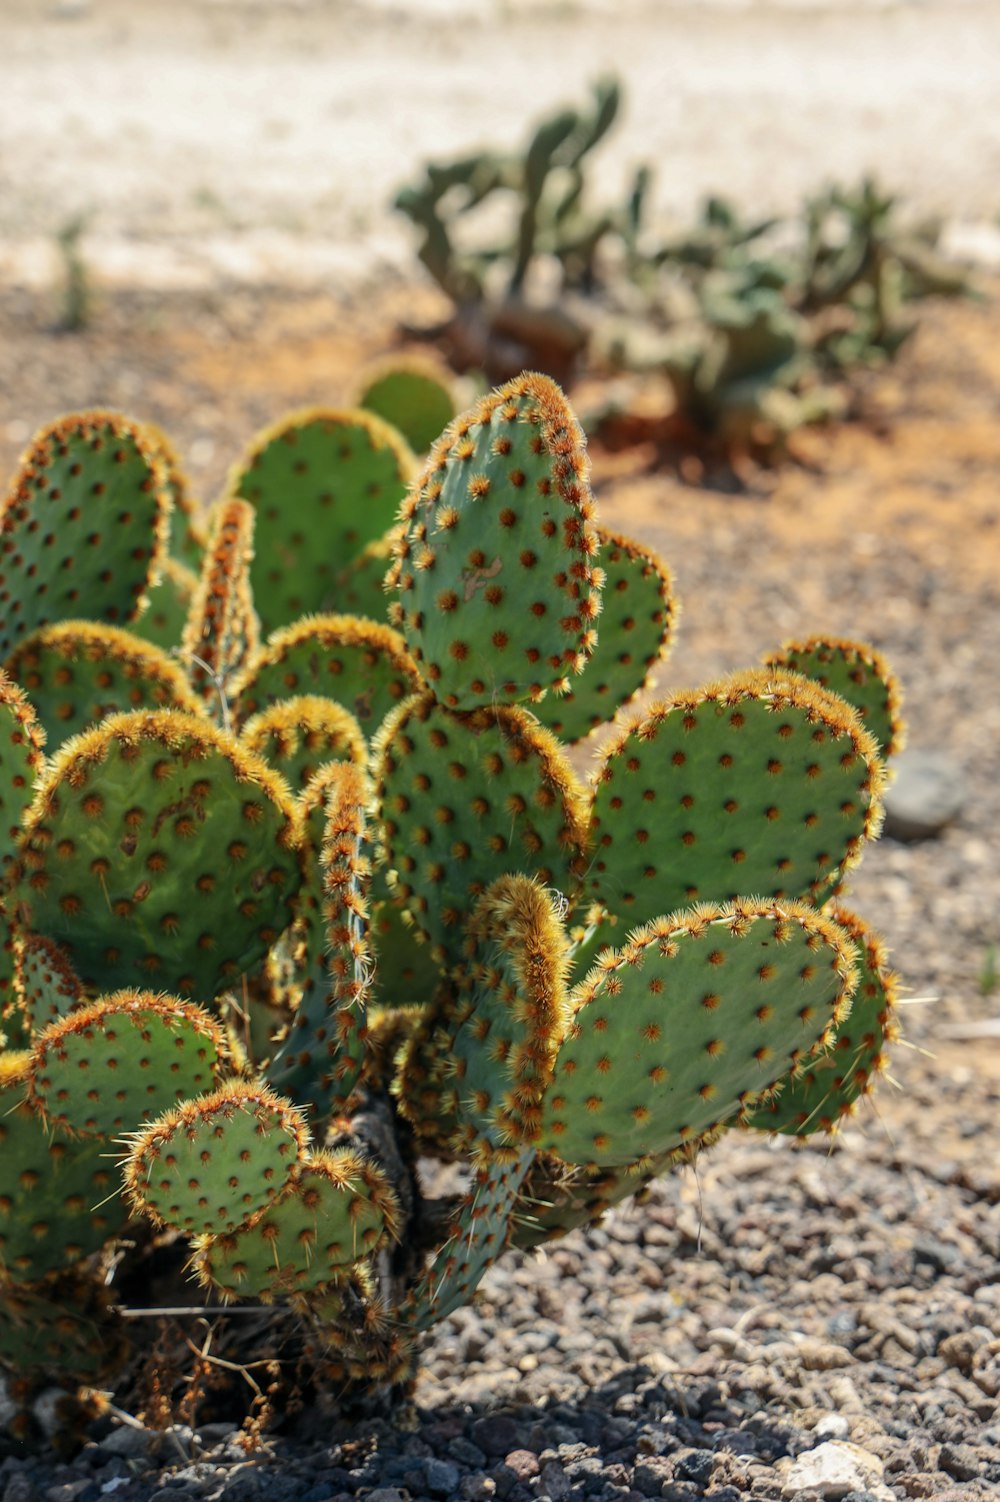 green cactus on brown soil during daytime